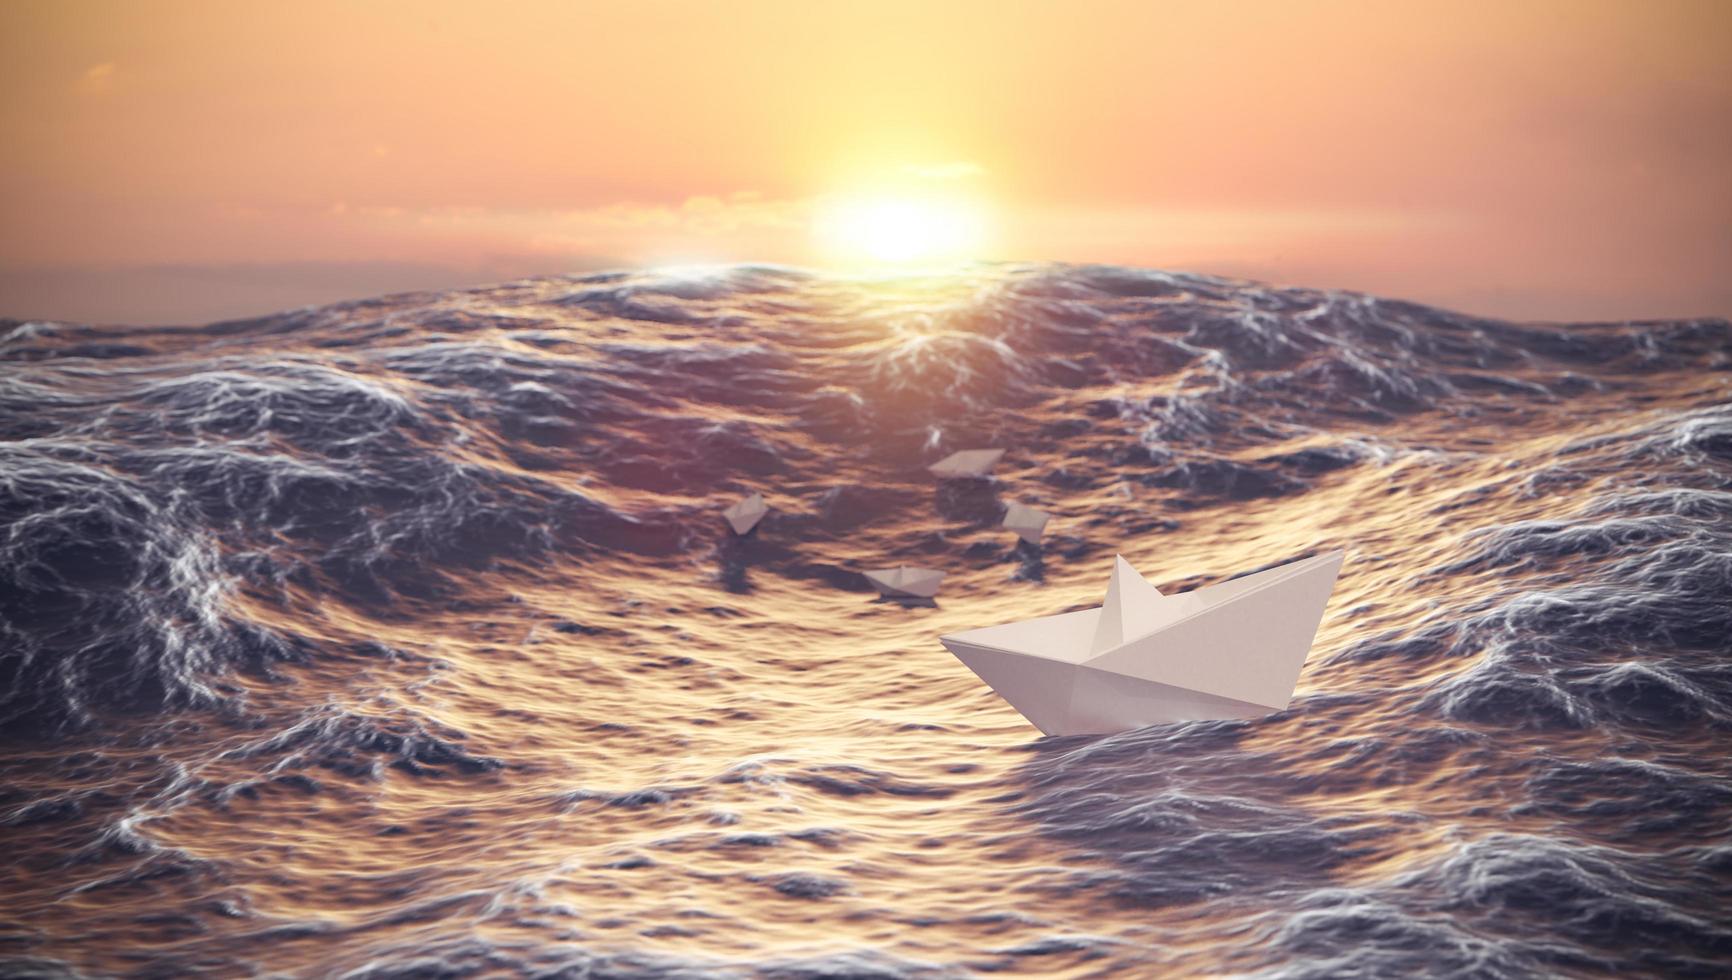 sonnenuntergang mit papierbootkampfwelle im ozean, führung und geschäftskonzept foto